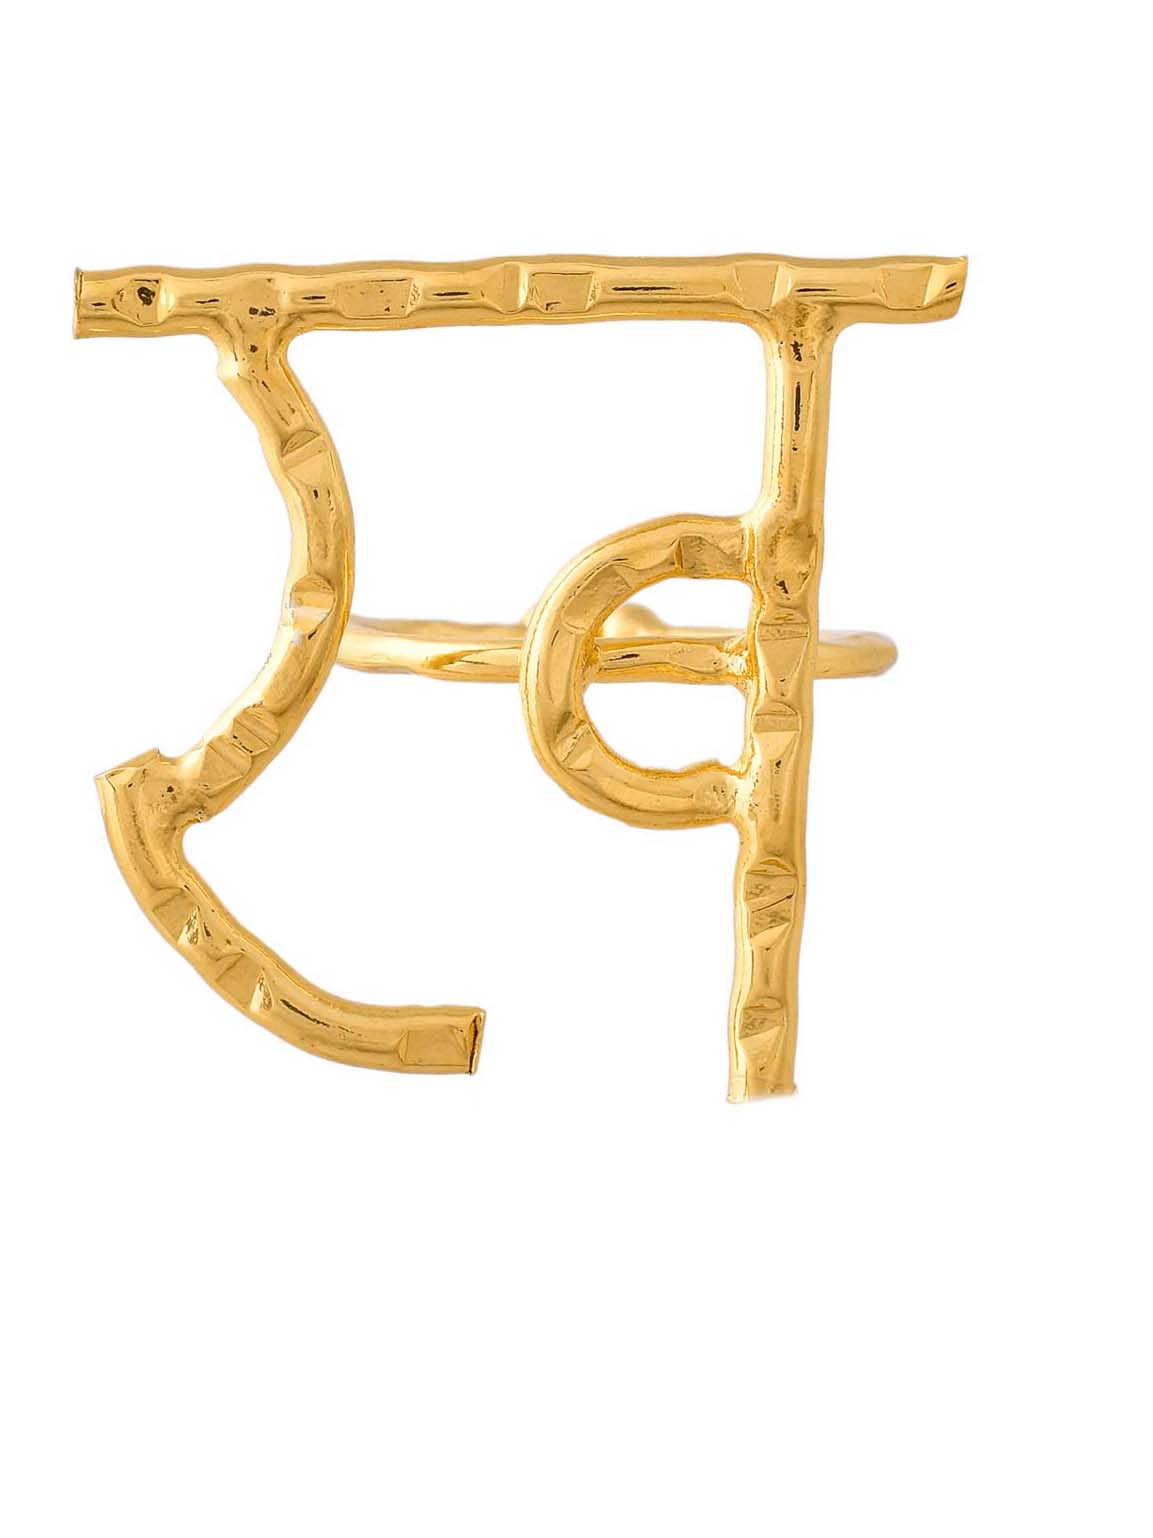 Women's Akshar Ring R40 - Zurii Jewels